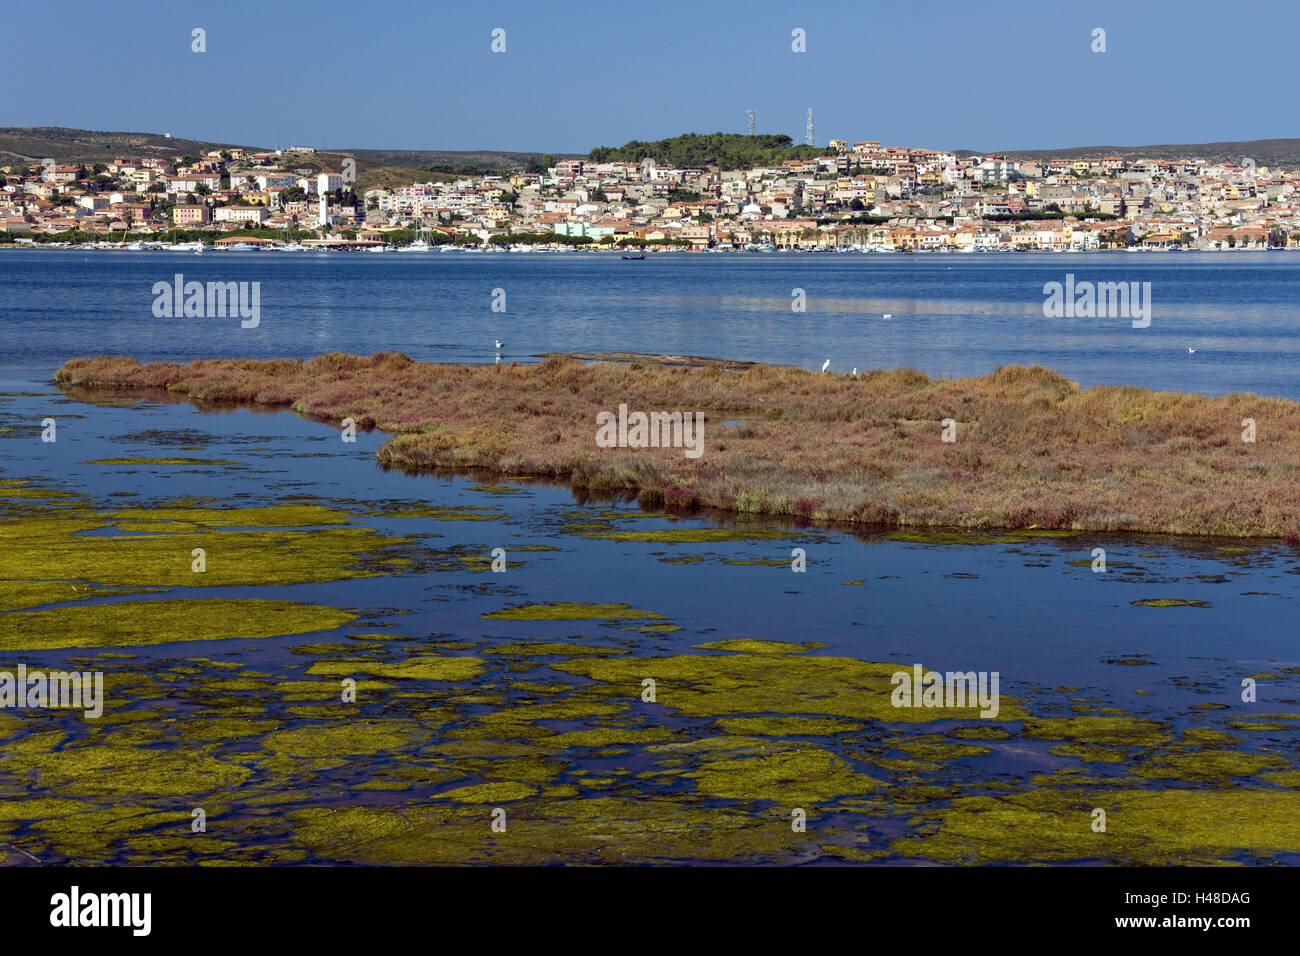 Italy, Location Sardinia, sea view Sant 'Antioco, Stock Photo